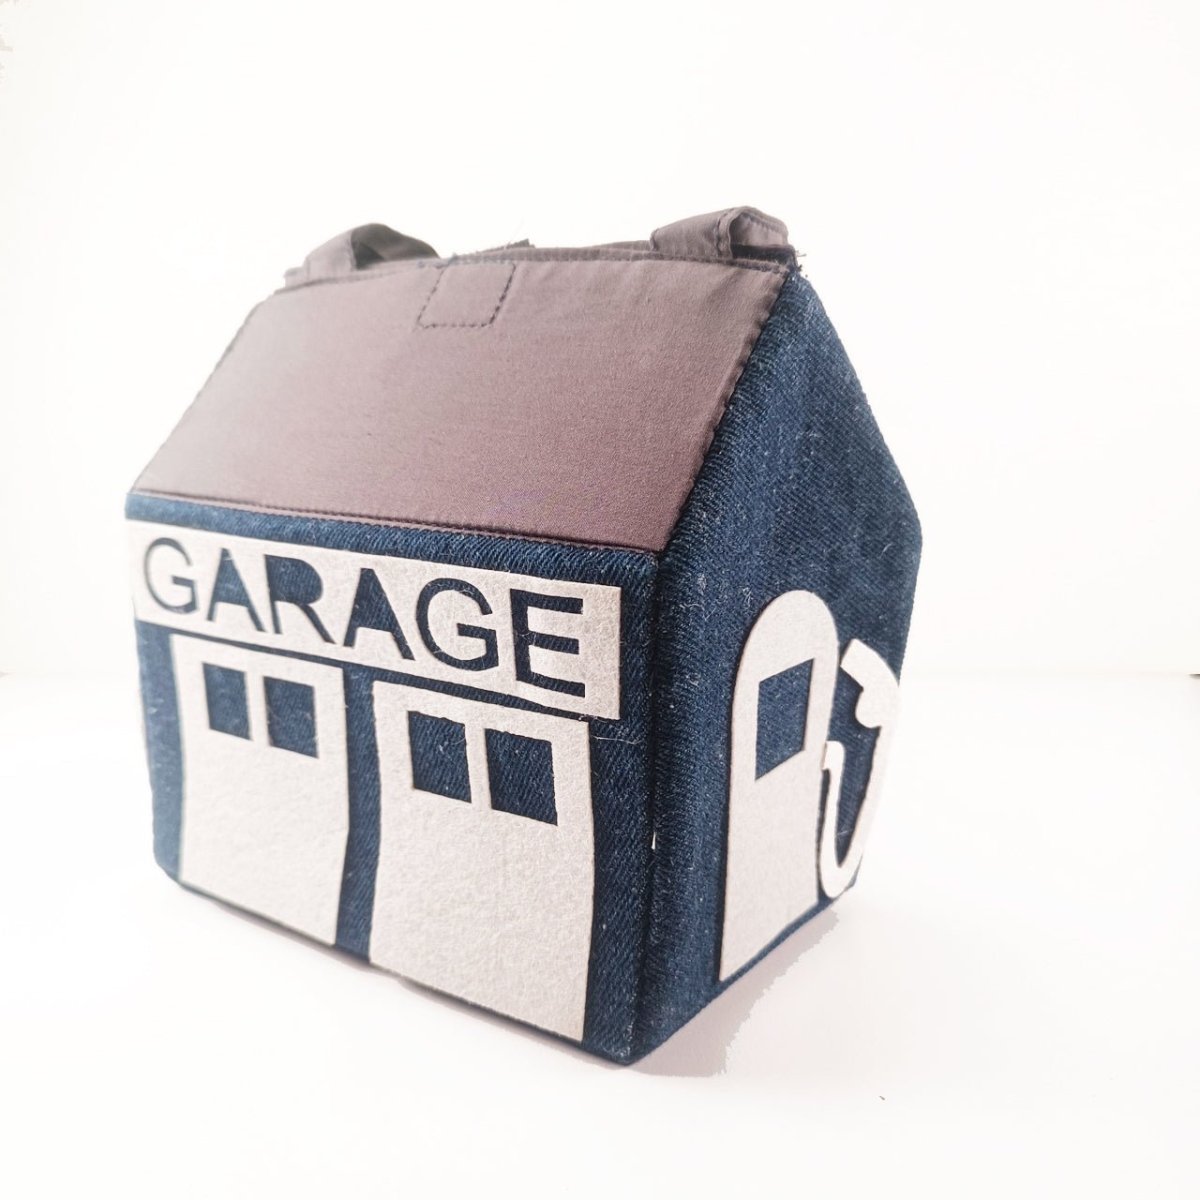 CuddlyCoo Fabric Doll House- Garage - CCDOLLHOUSEBAGGARAGE